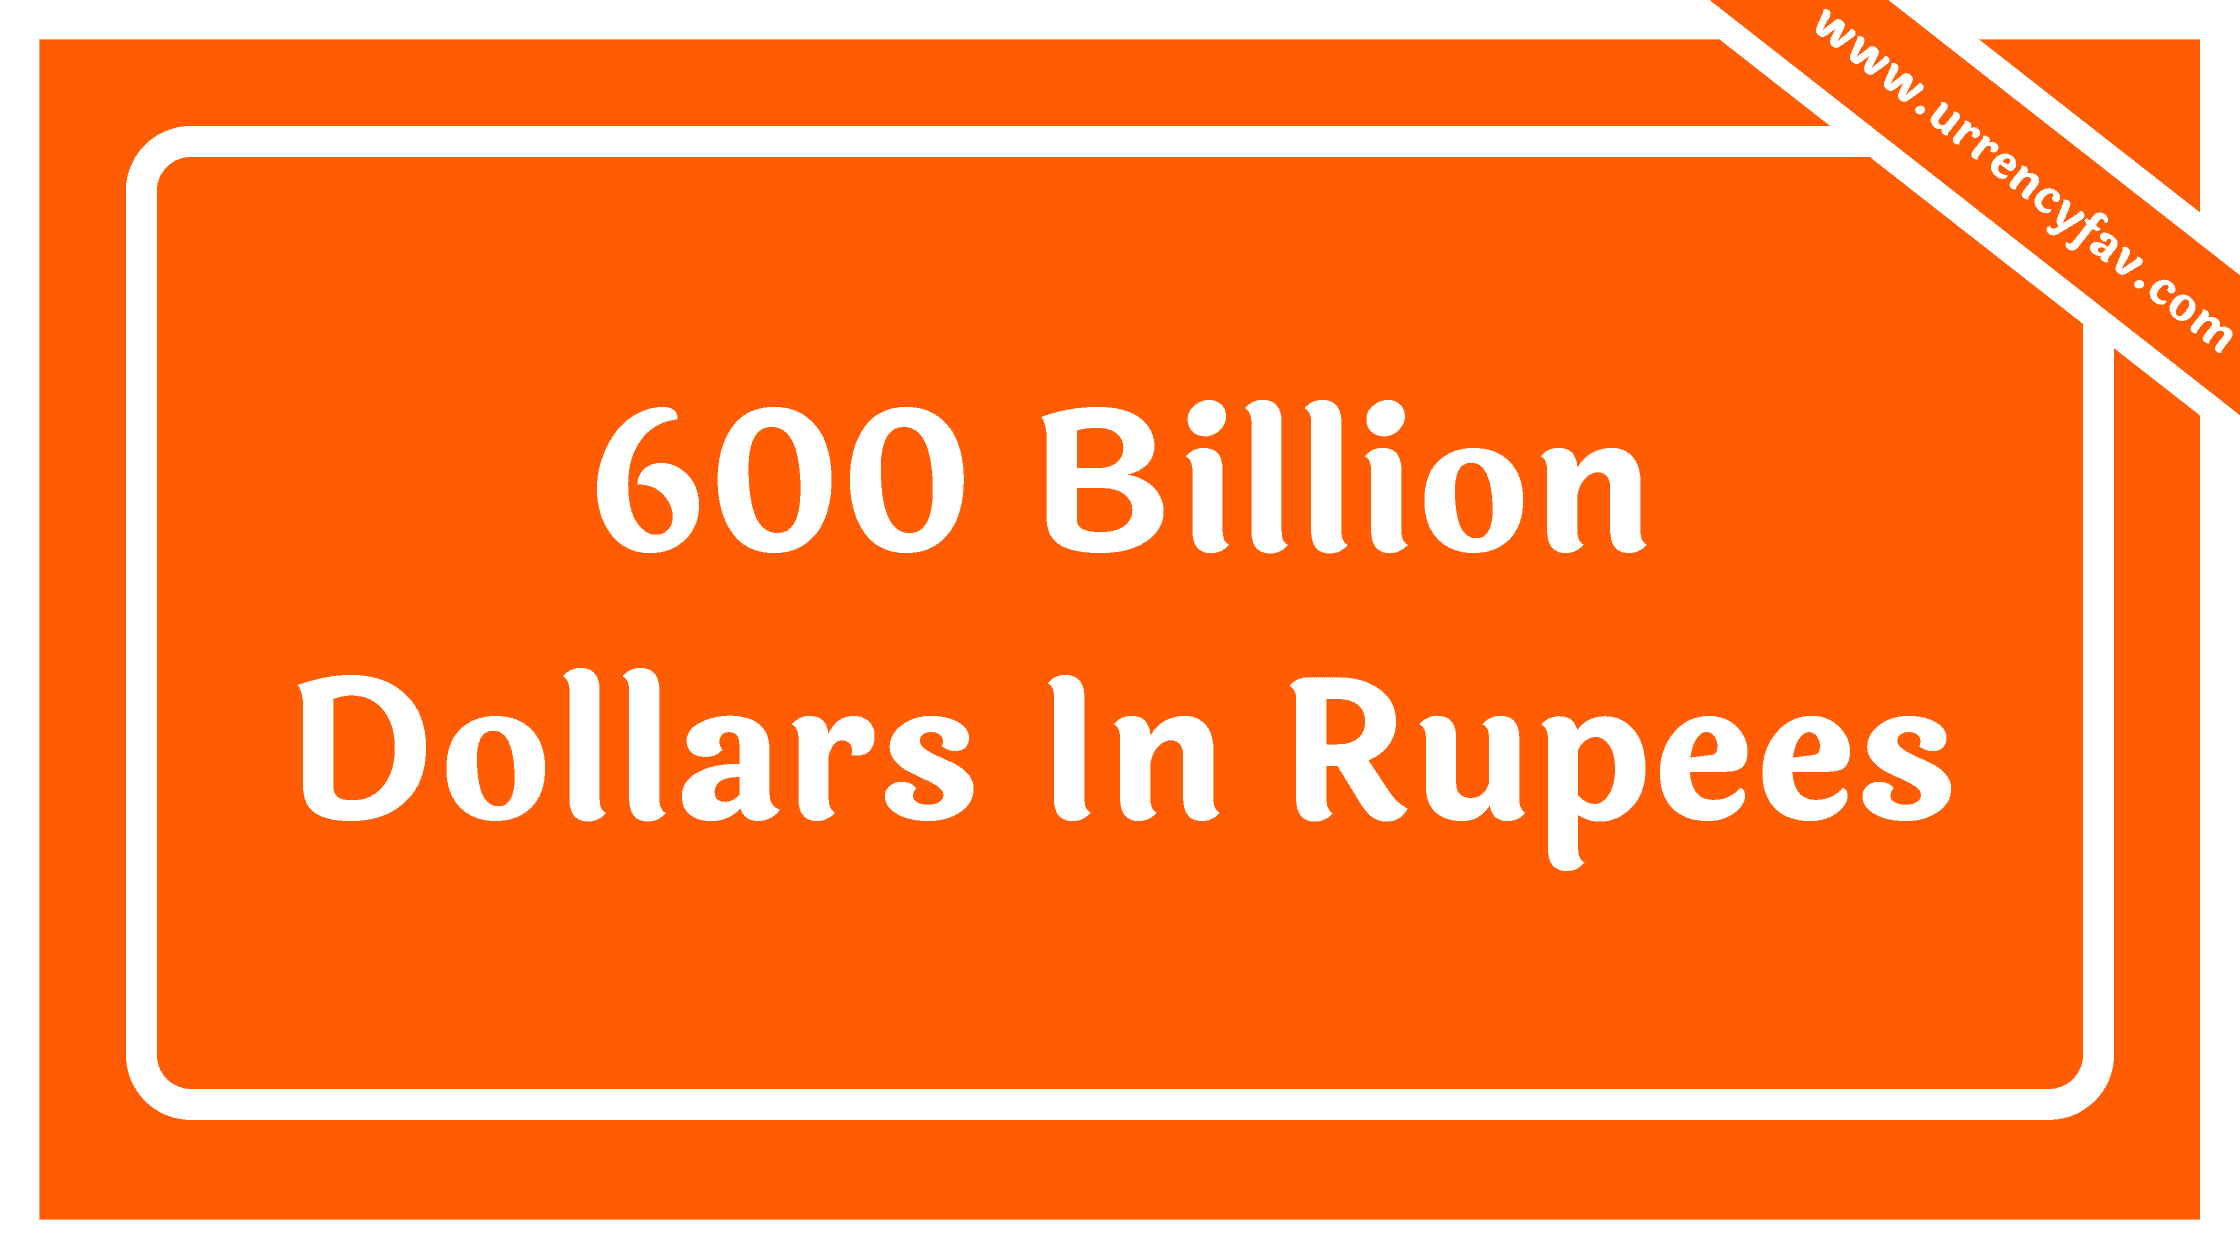 600 Billion Dollars In Rupees